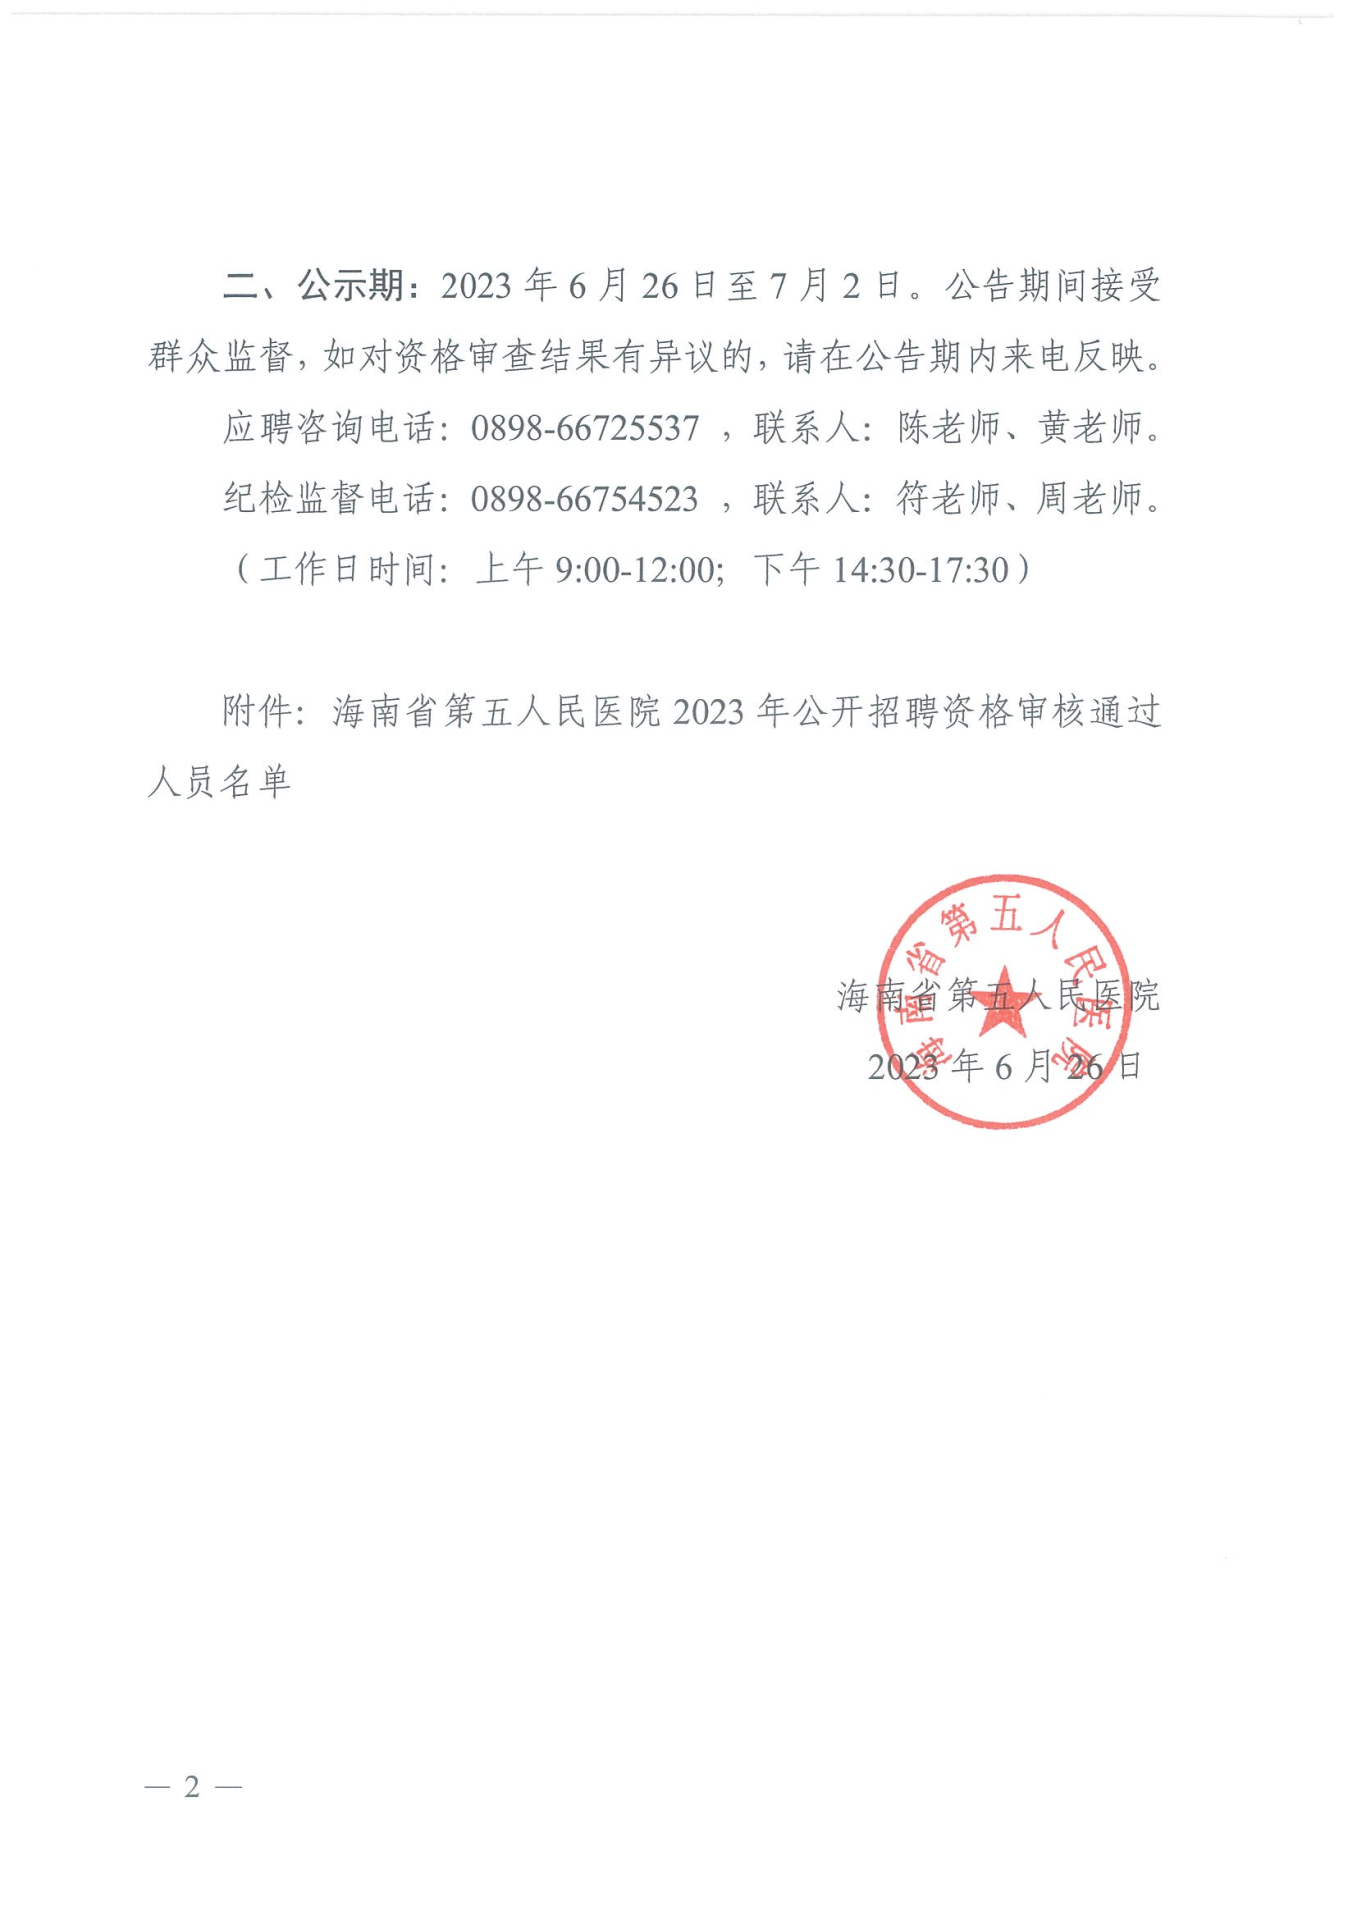 海南省第五人民医院2023年公开招聘工作人员资格审核公示_01.png